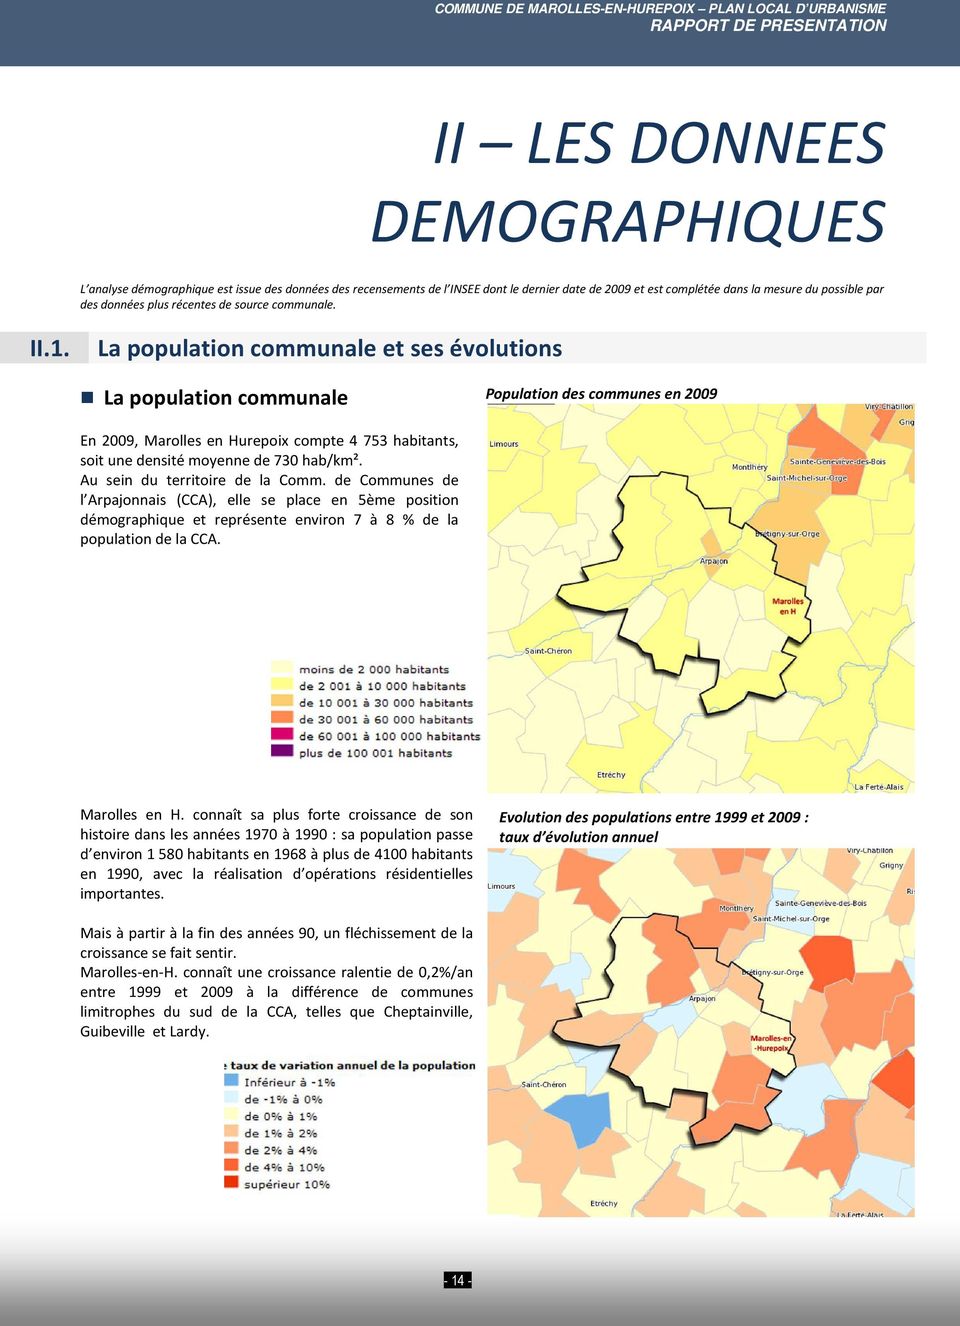 La population communale et ses évolutions La population communale Population des communes en 2009 En 2009, Marolles en Hurepoix compte 4 753 habitants, soit une densité moyenne de 730 hab/km².